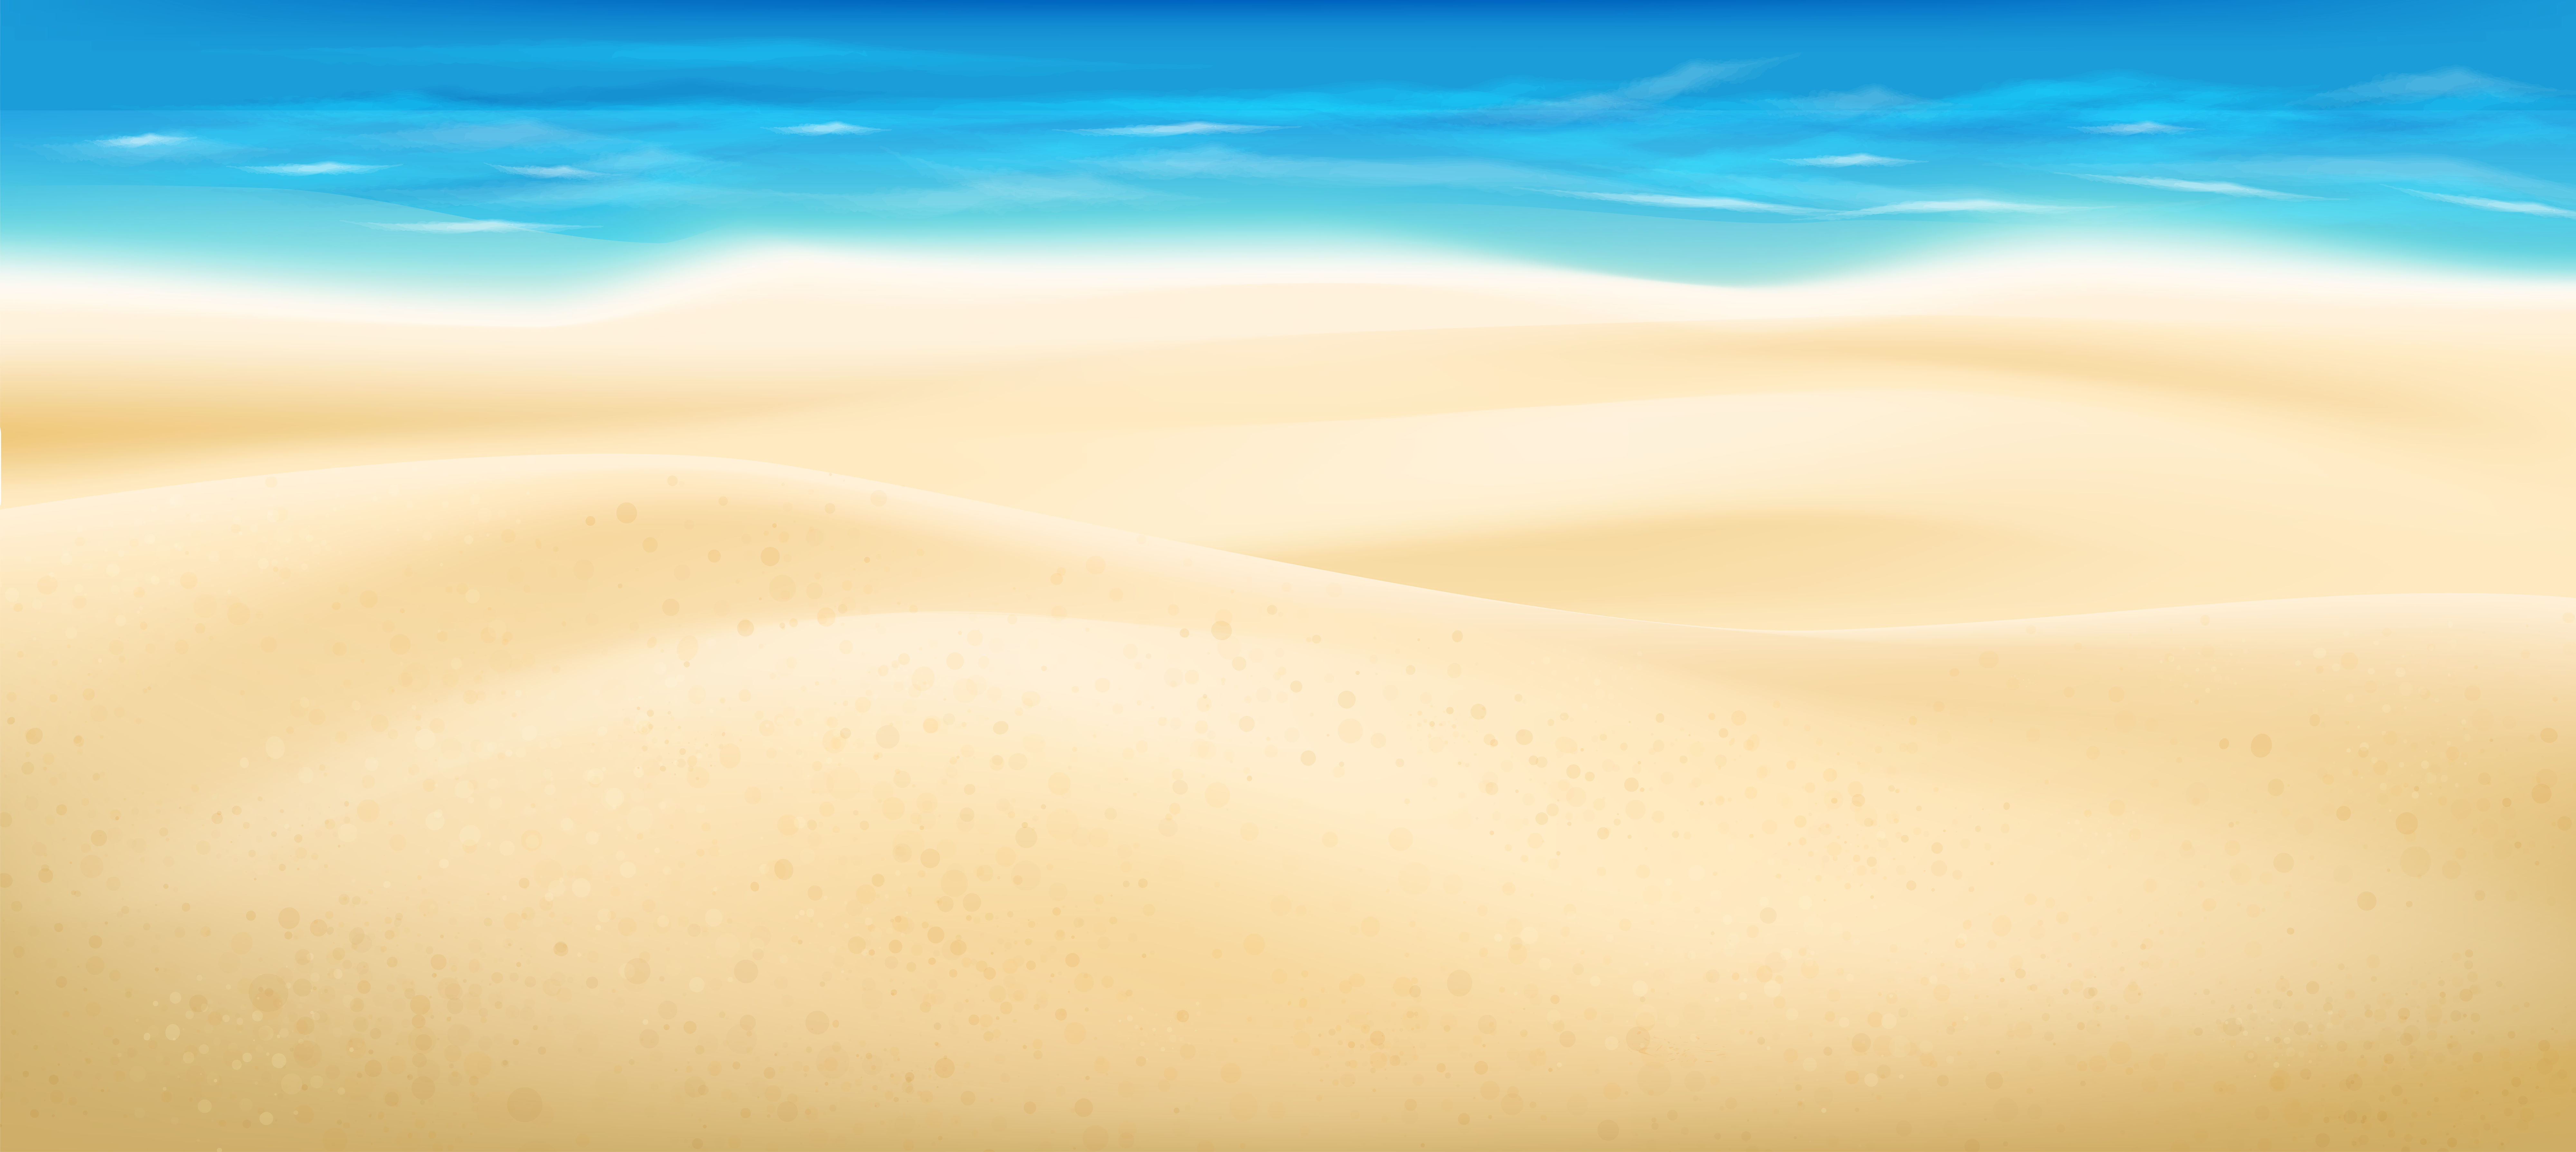 free beach sand clipart - photo #39